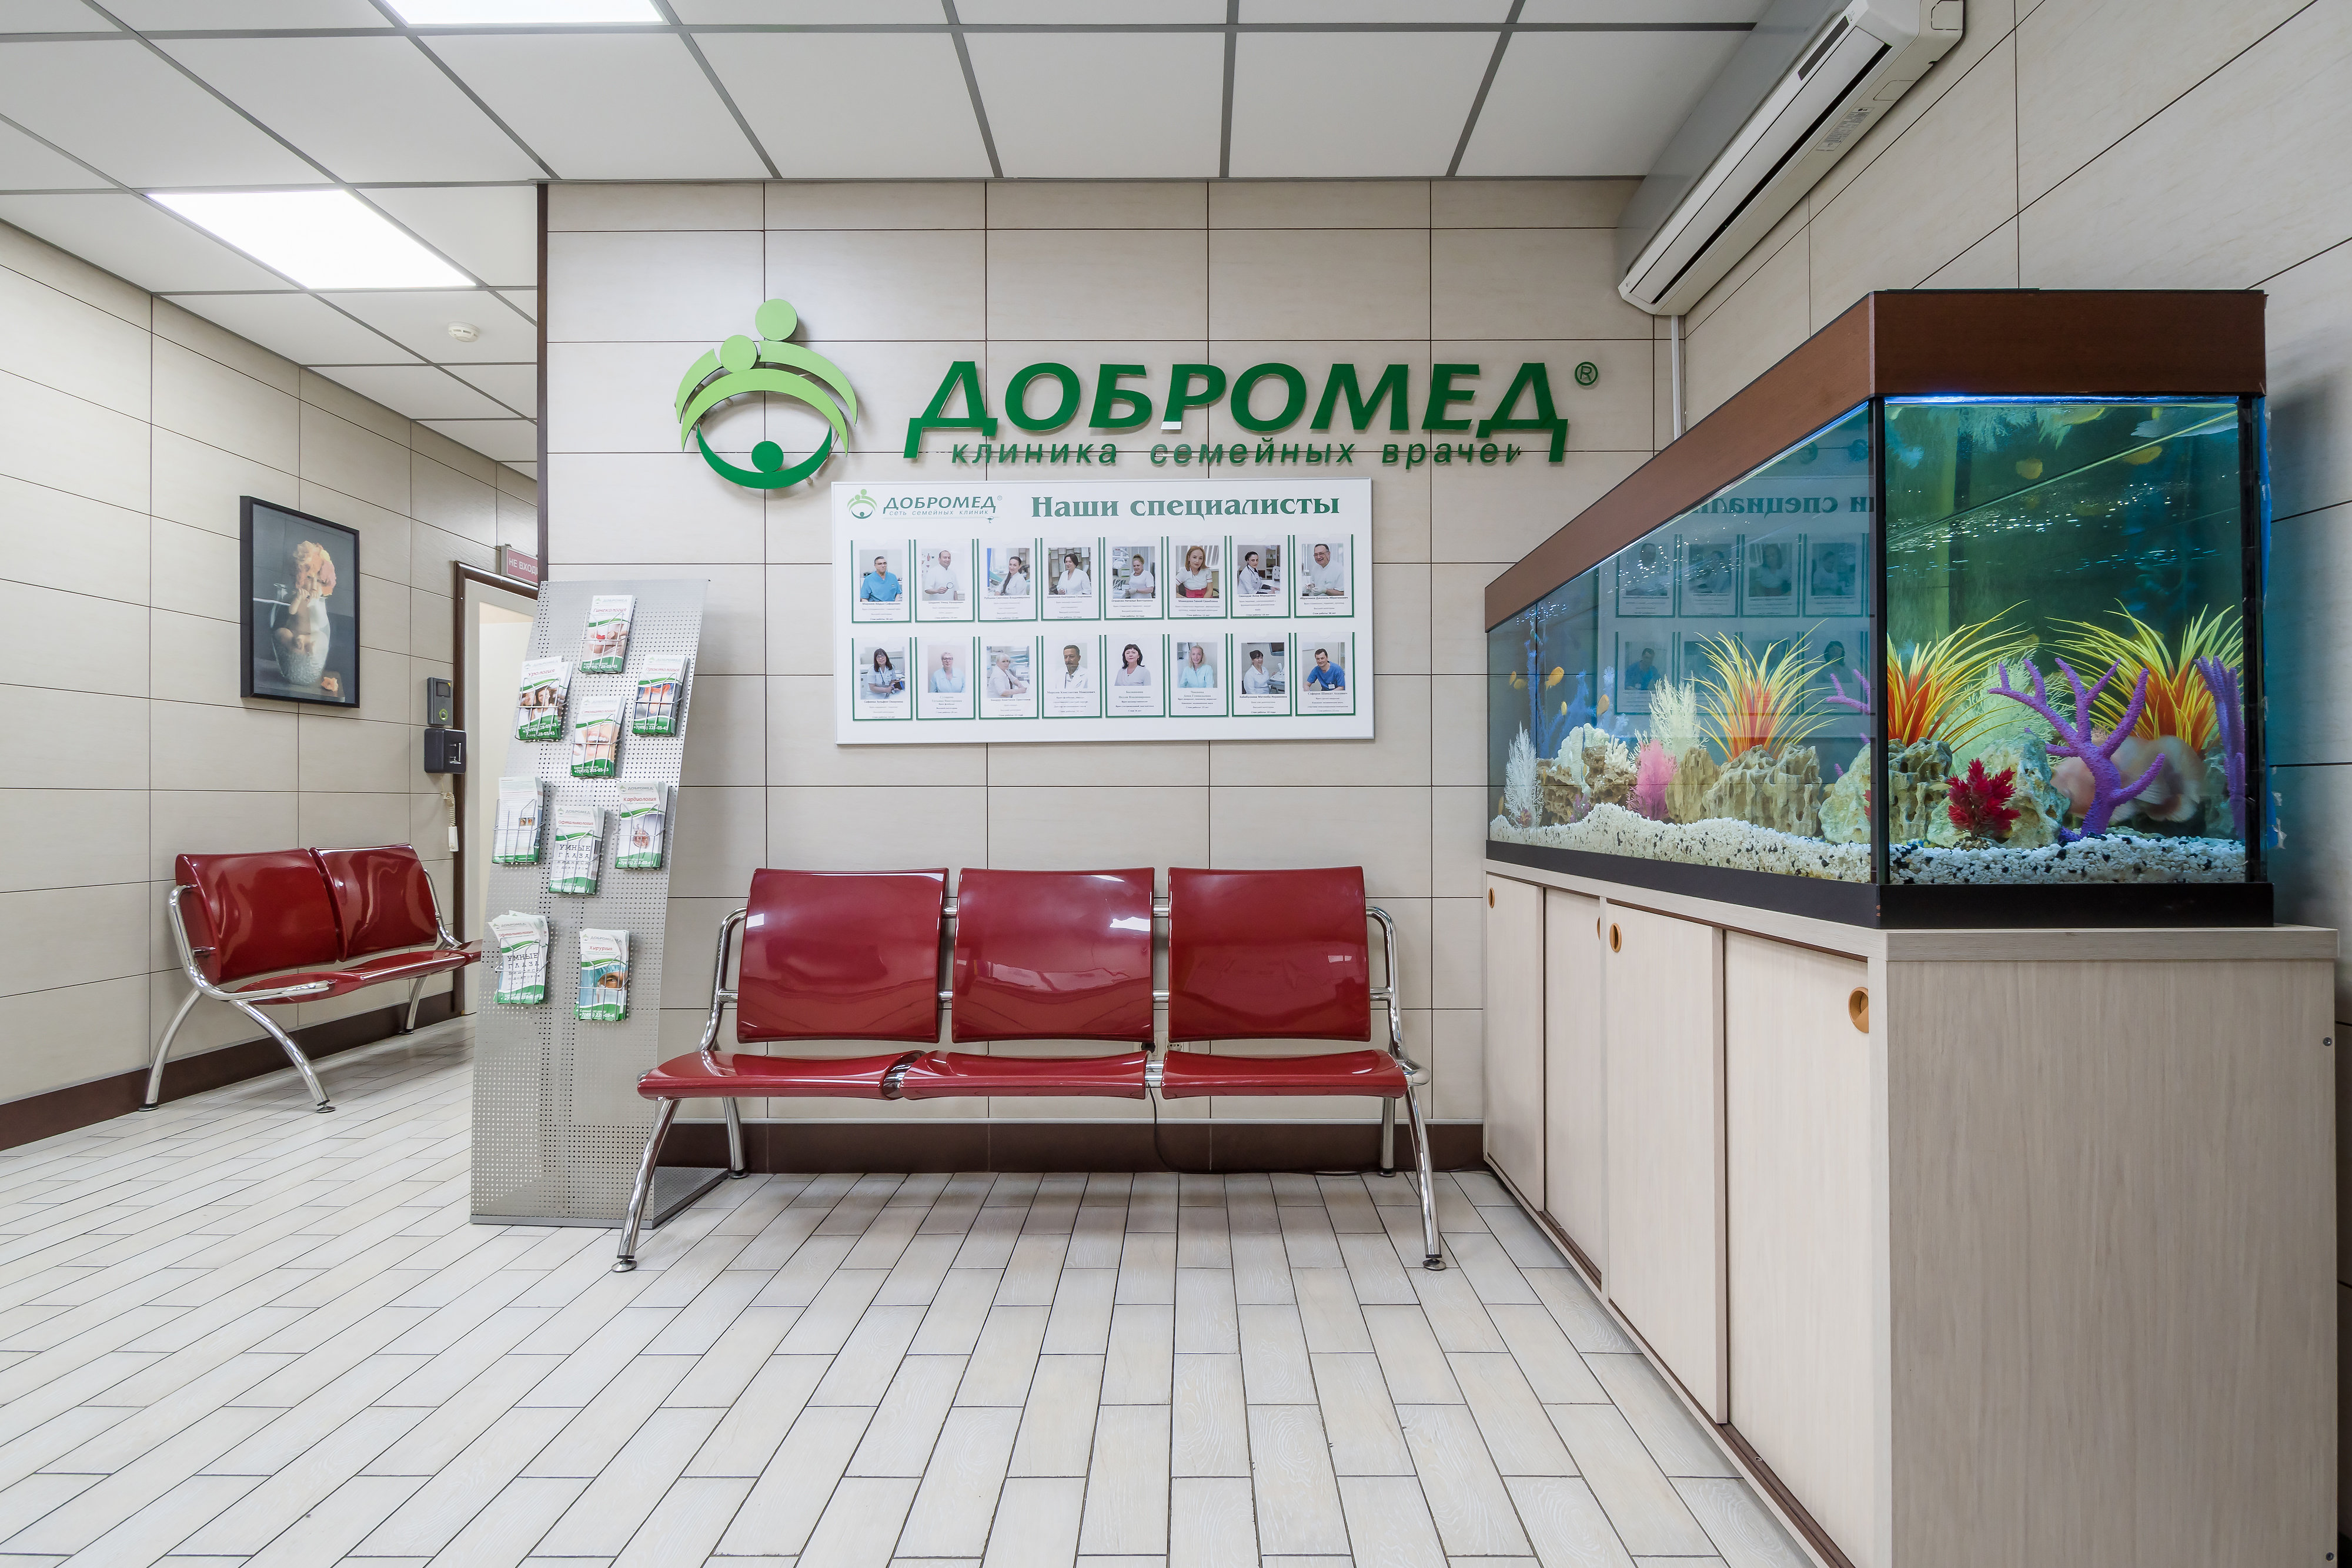 Добромед клиника в москве официальный сайт